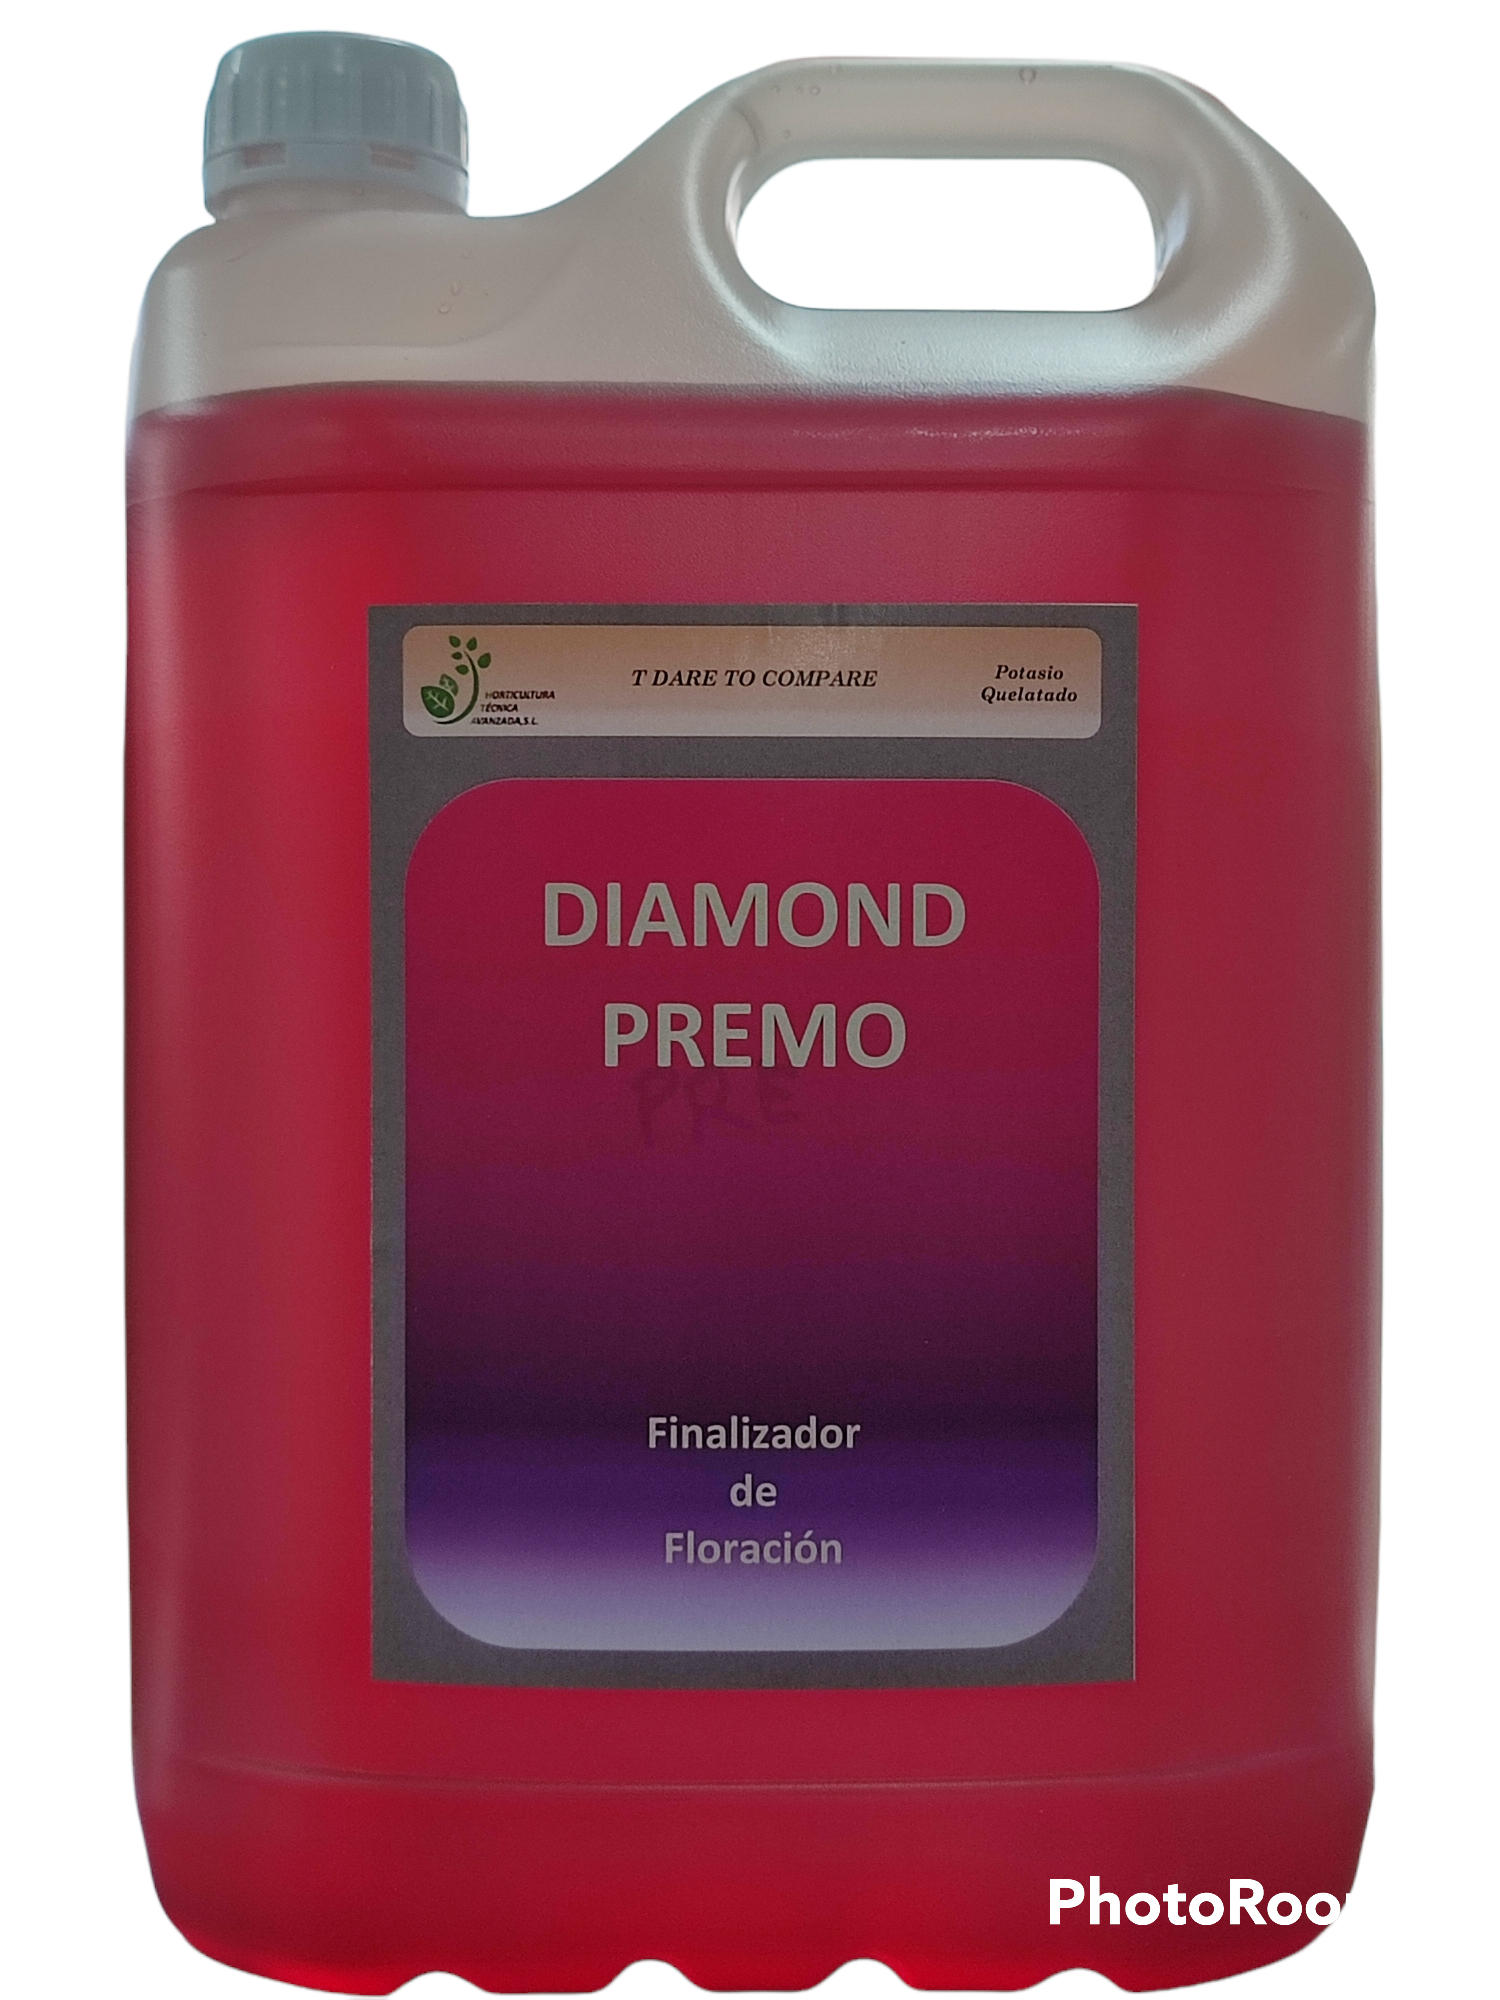 DIAMOND PREMO Horticultura Técnica Avanzada, Env. 5 L